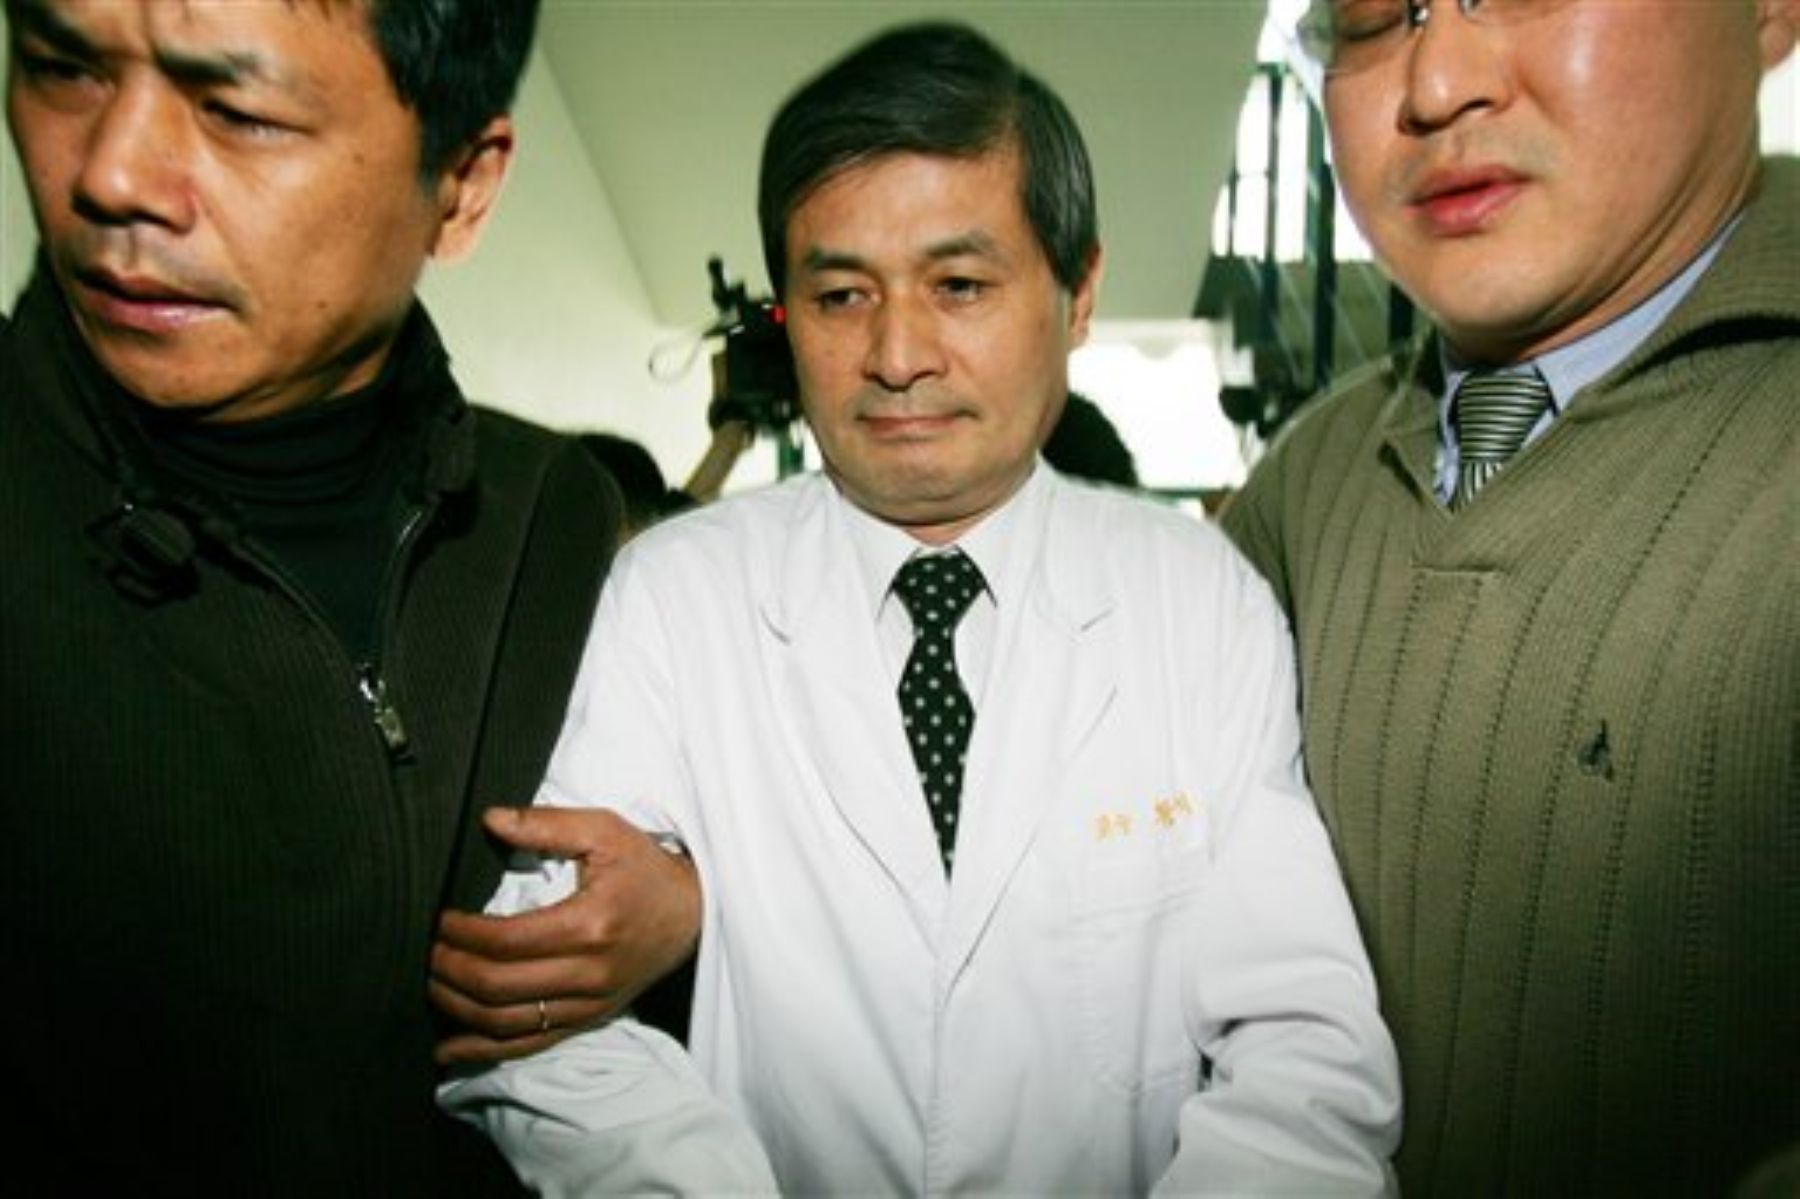 El investigador coreano Hwang Woo-Suk era considerado una estrella en su país, hasta que descubrieron que había fabricado mentiras científicas.